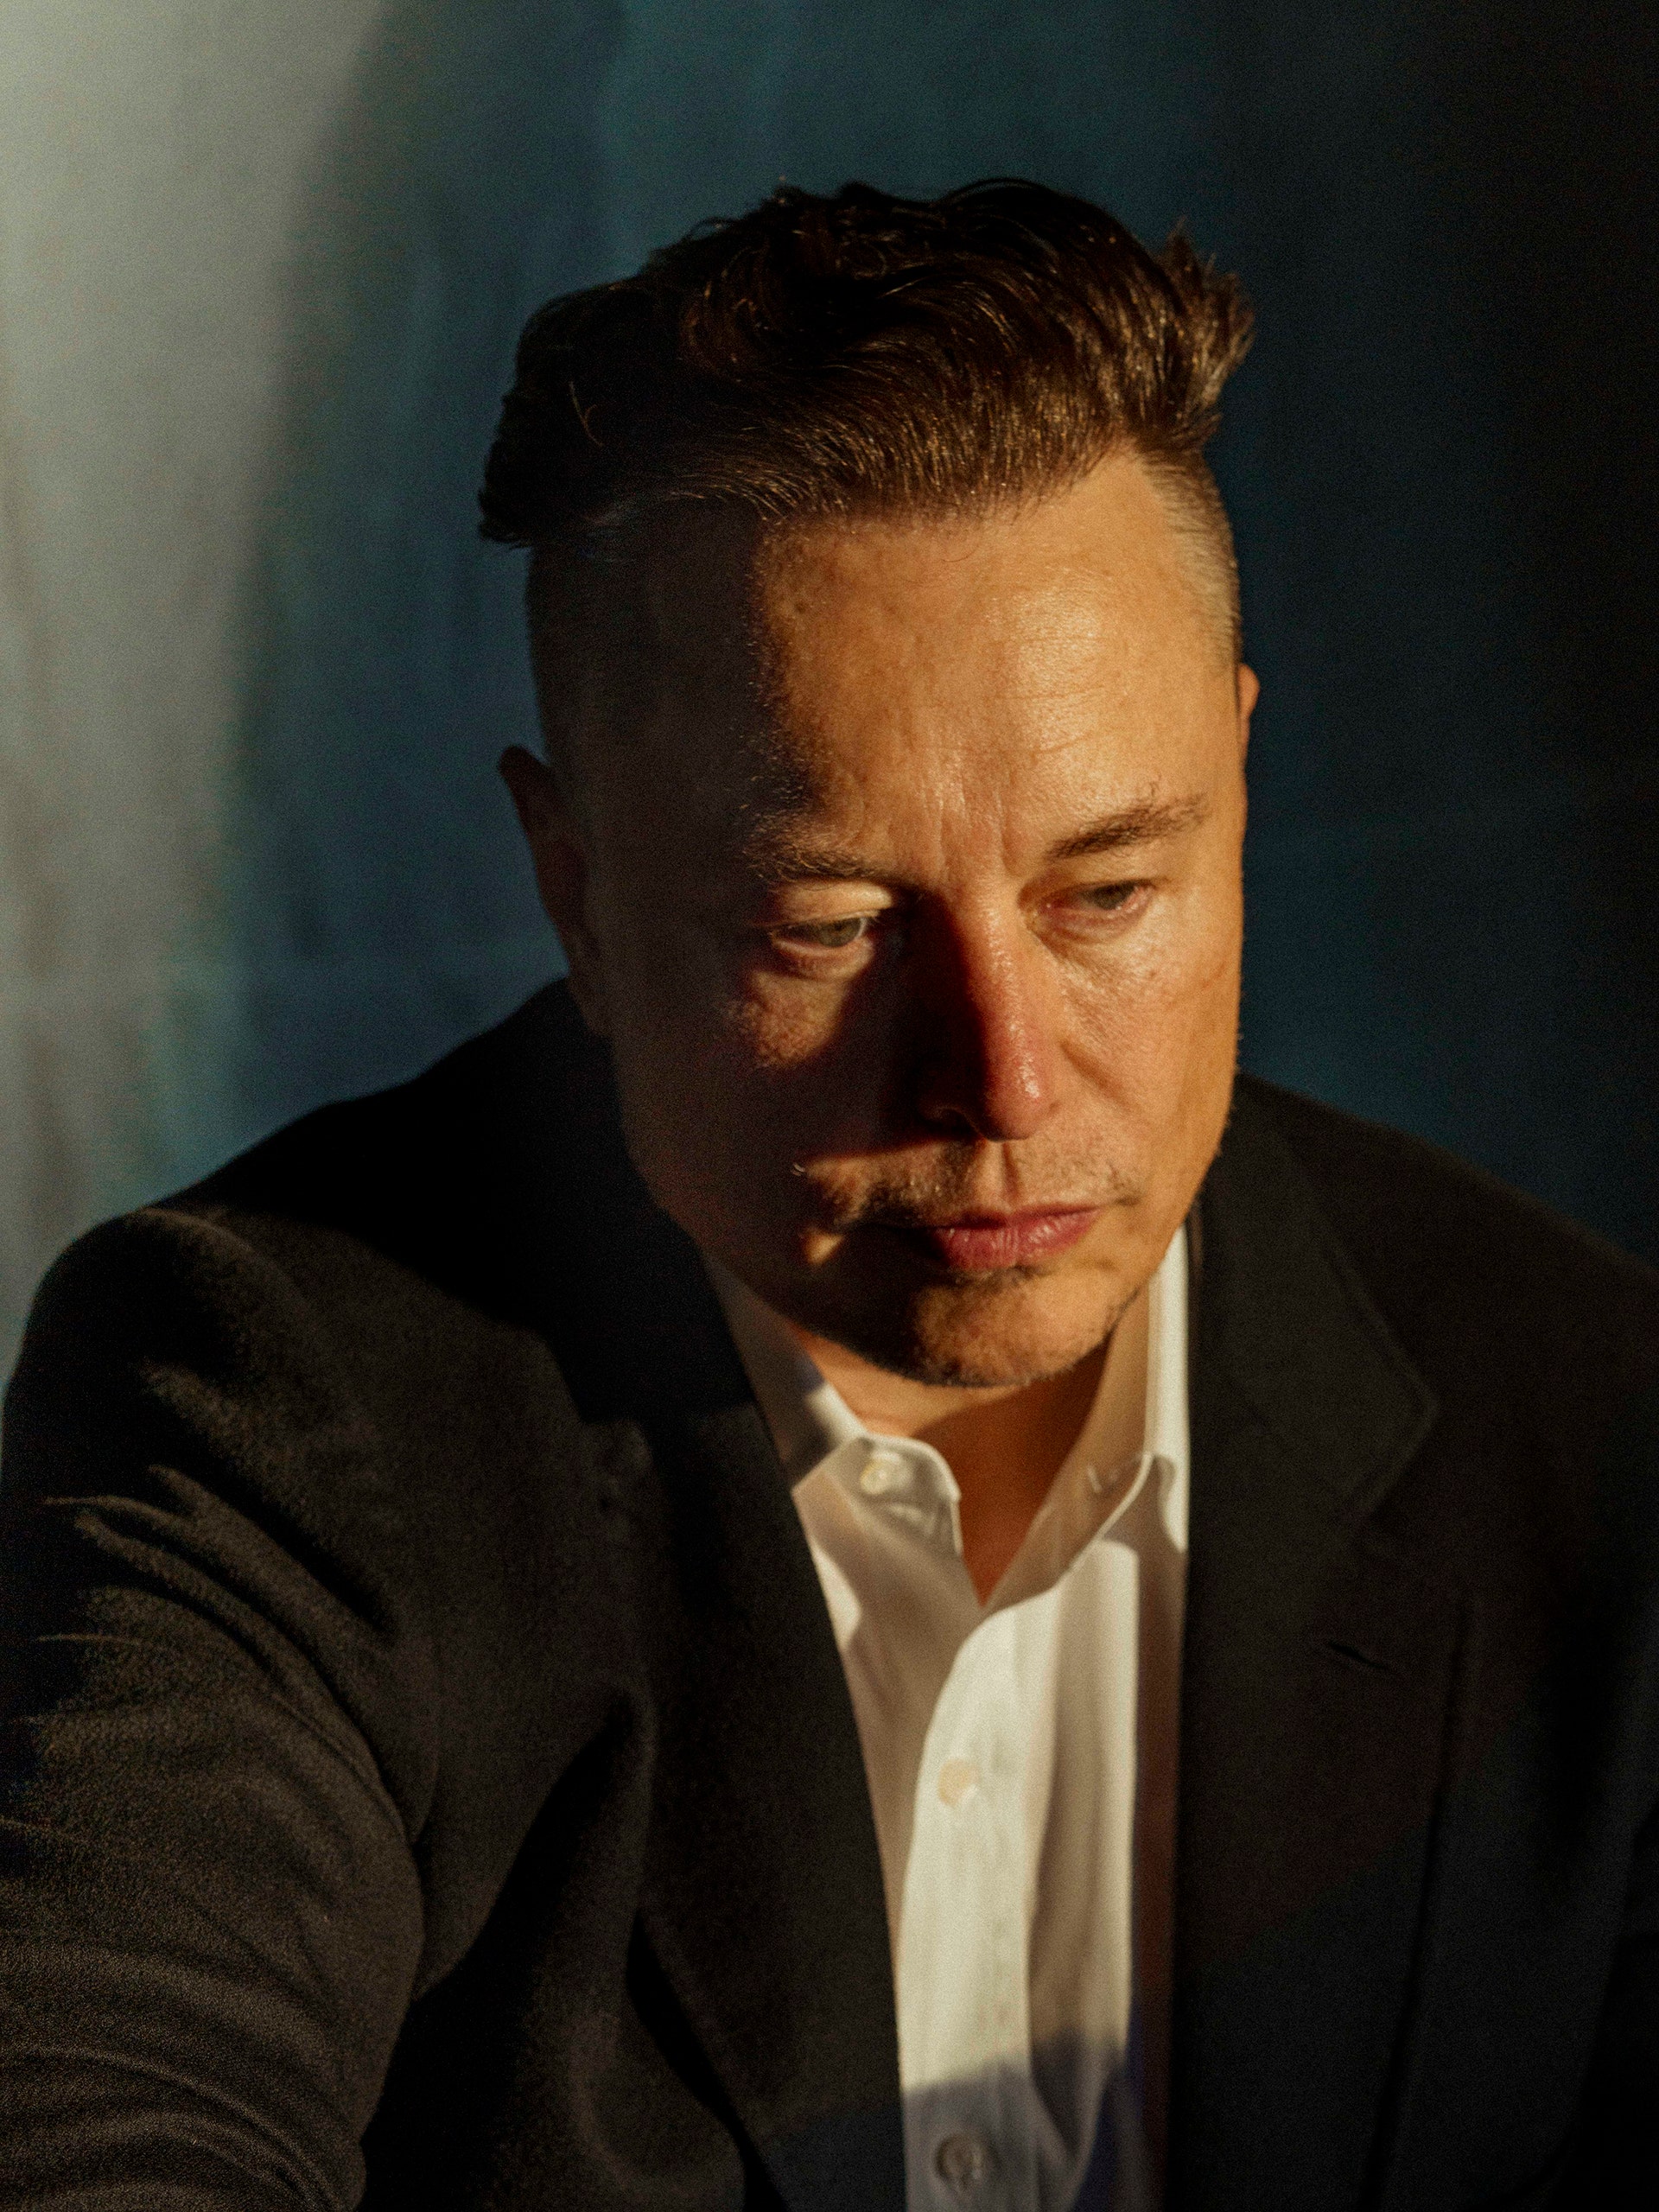 Twitter: Cỗ máy đầy lỗi của Elon Musk đang vận hành với sự chống đối, phá hoại từ chính nhân viên - Ảnh 2.